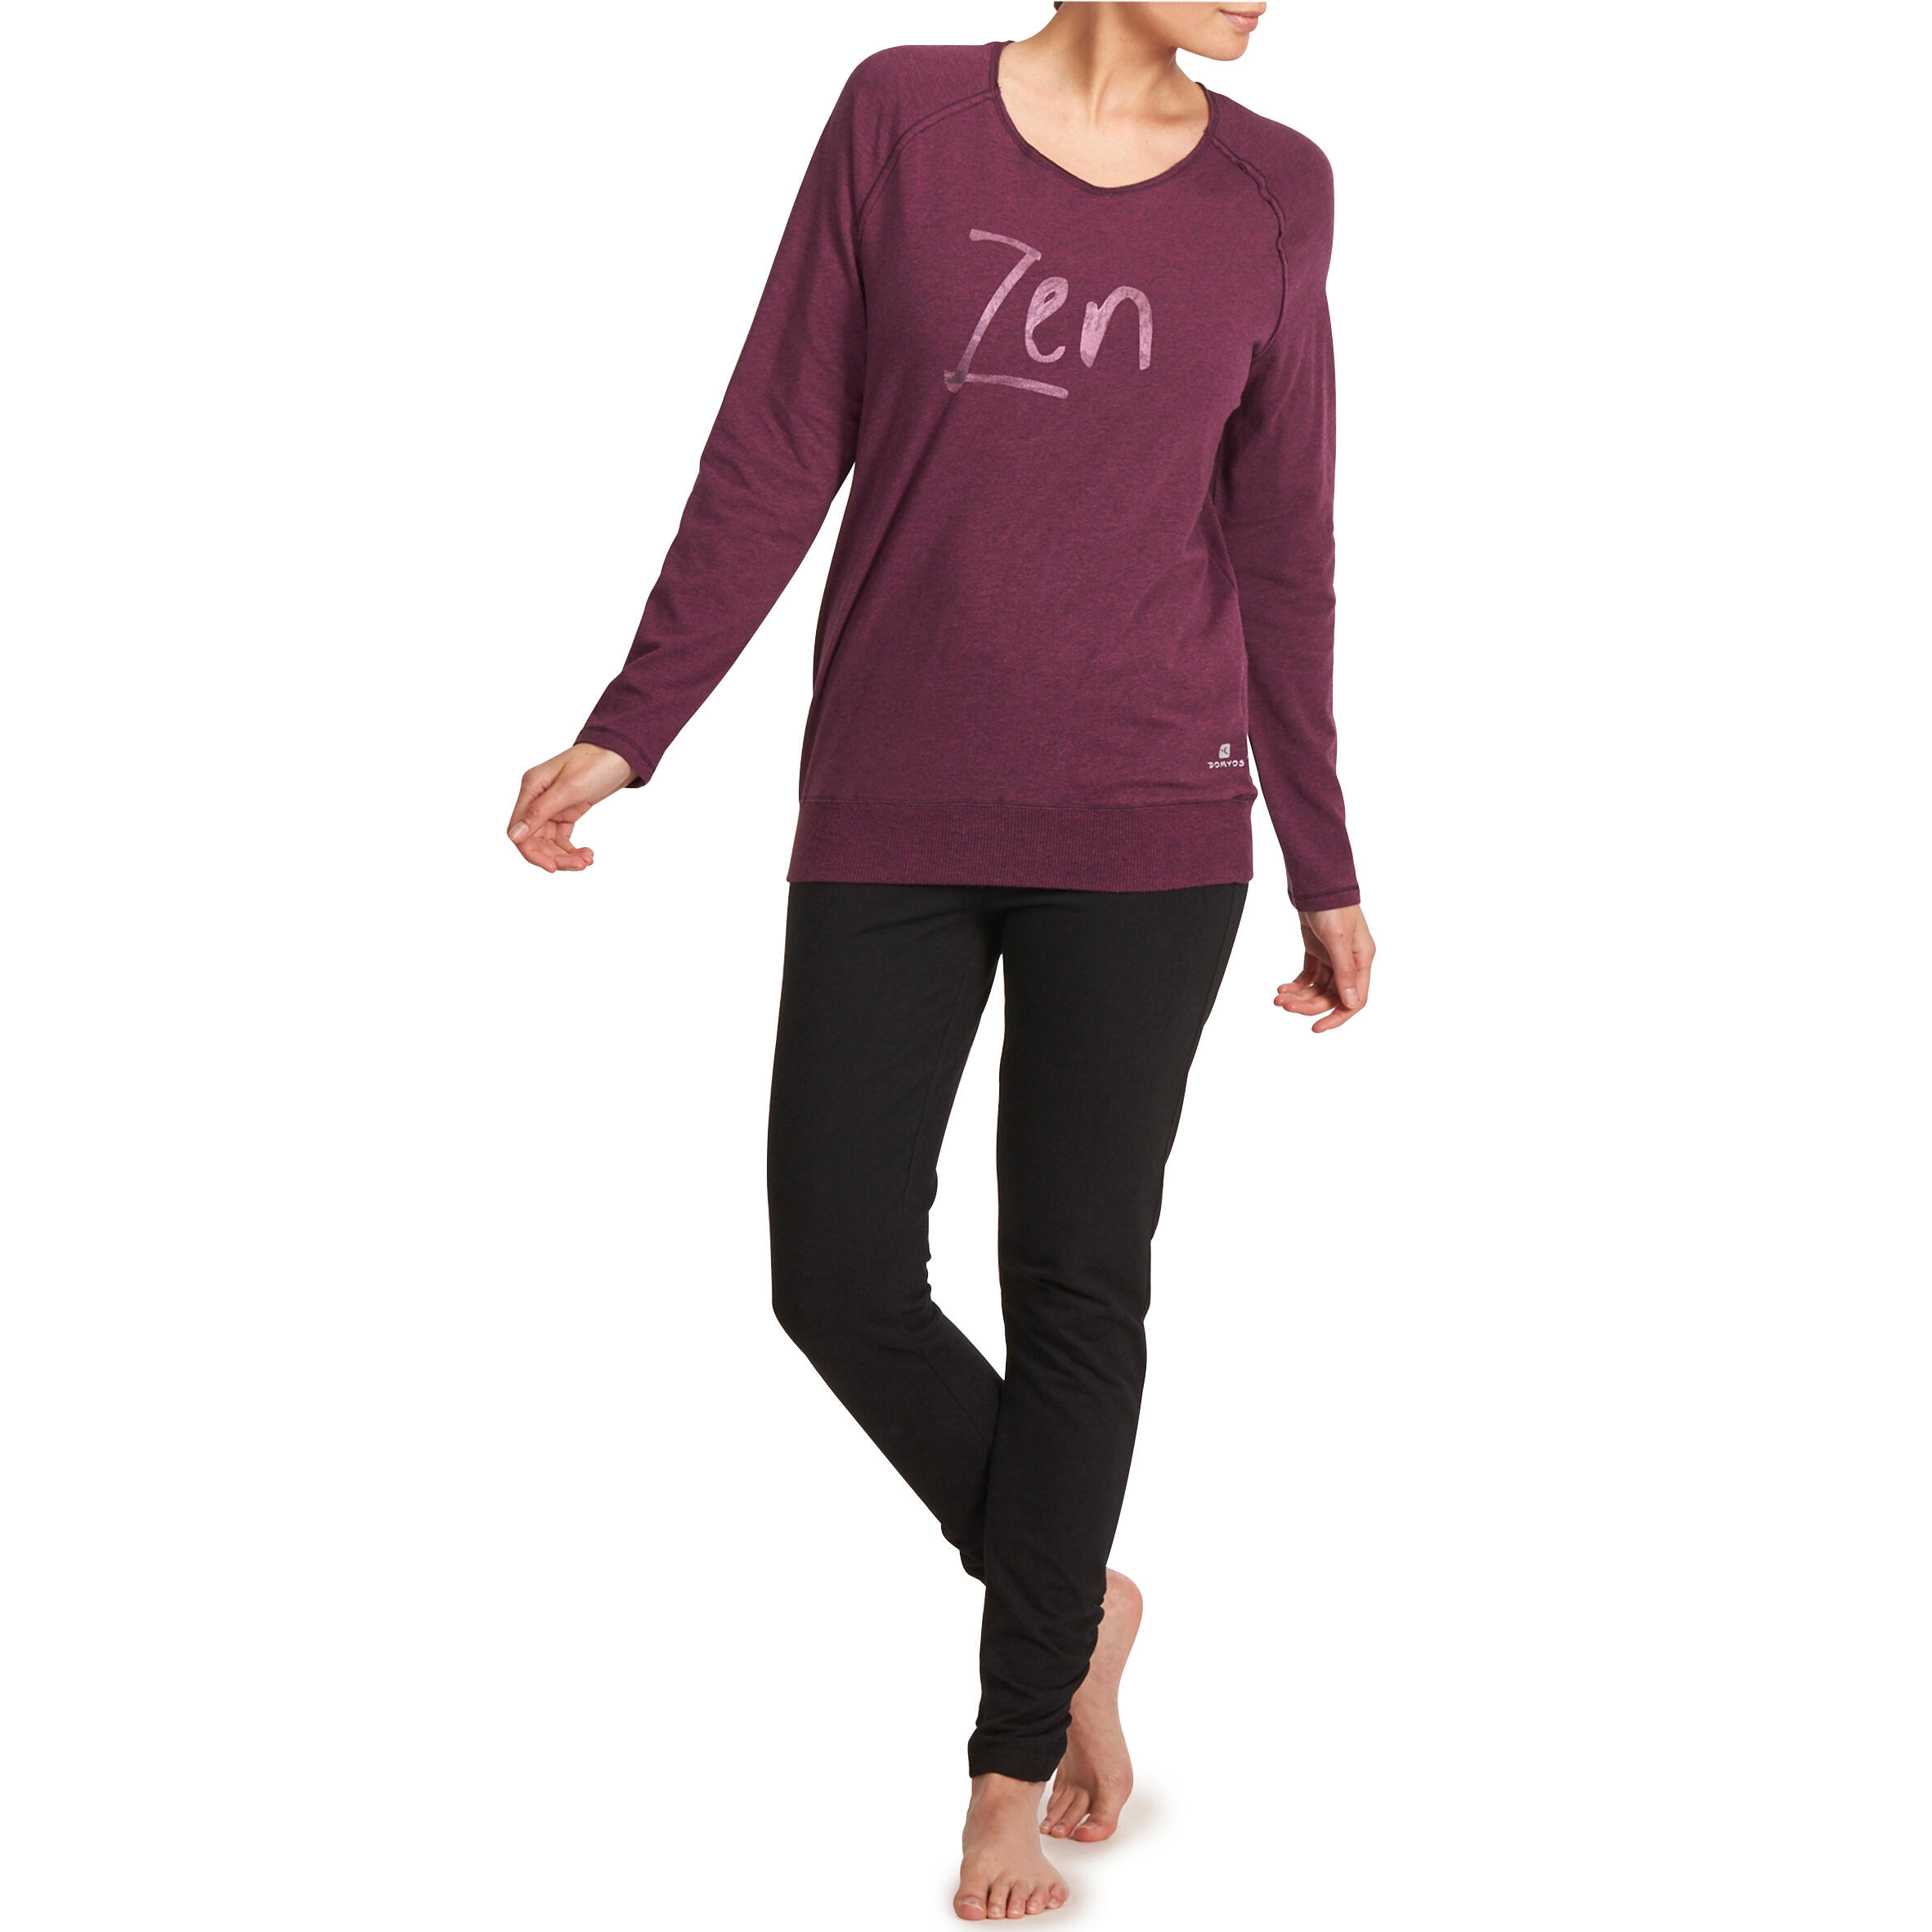 Women's Organic Cotton Long-Sleeved Yoga T-Shirt - Mottled Burgundy 12/12